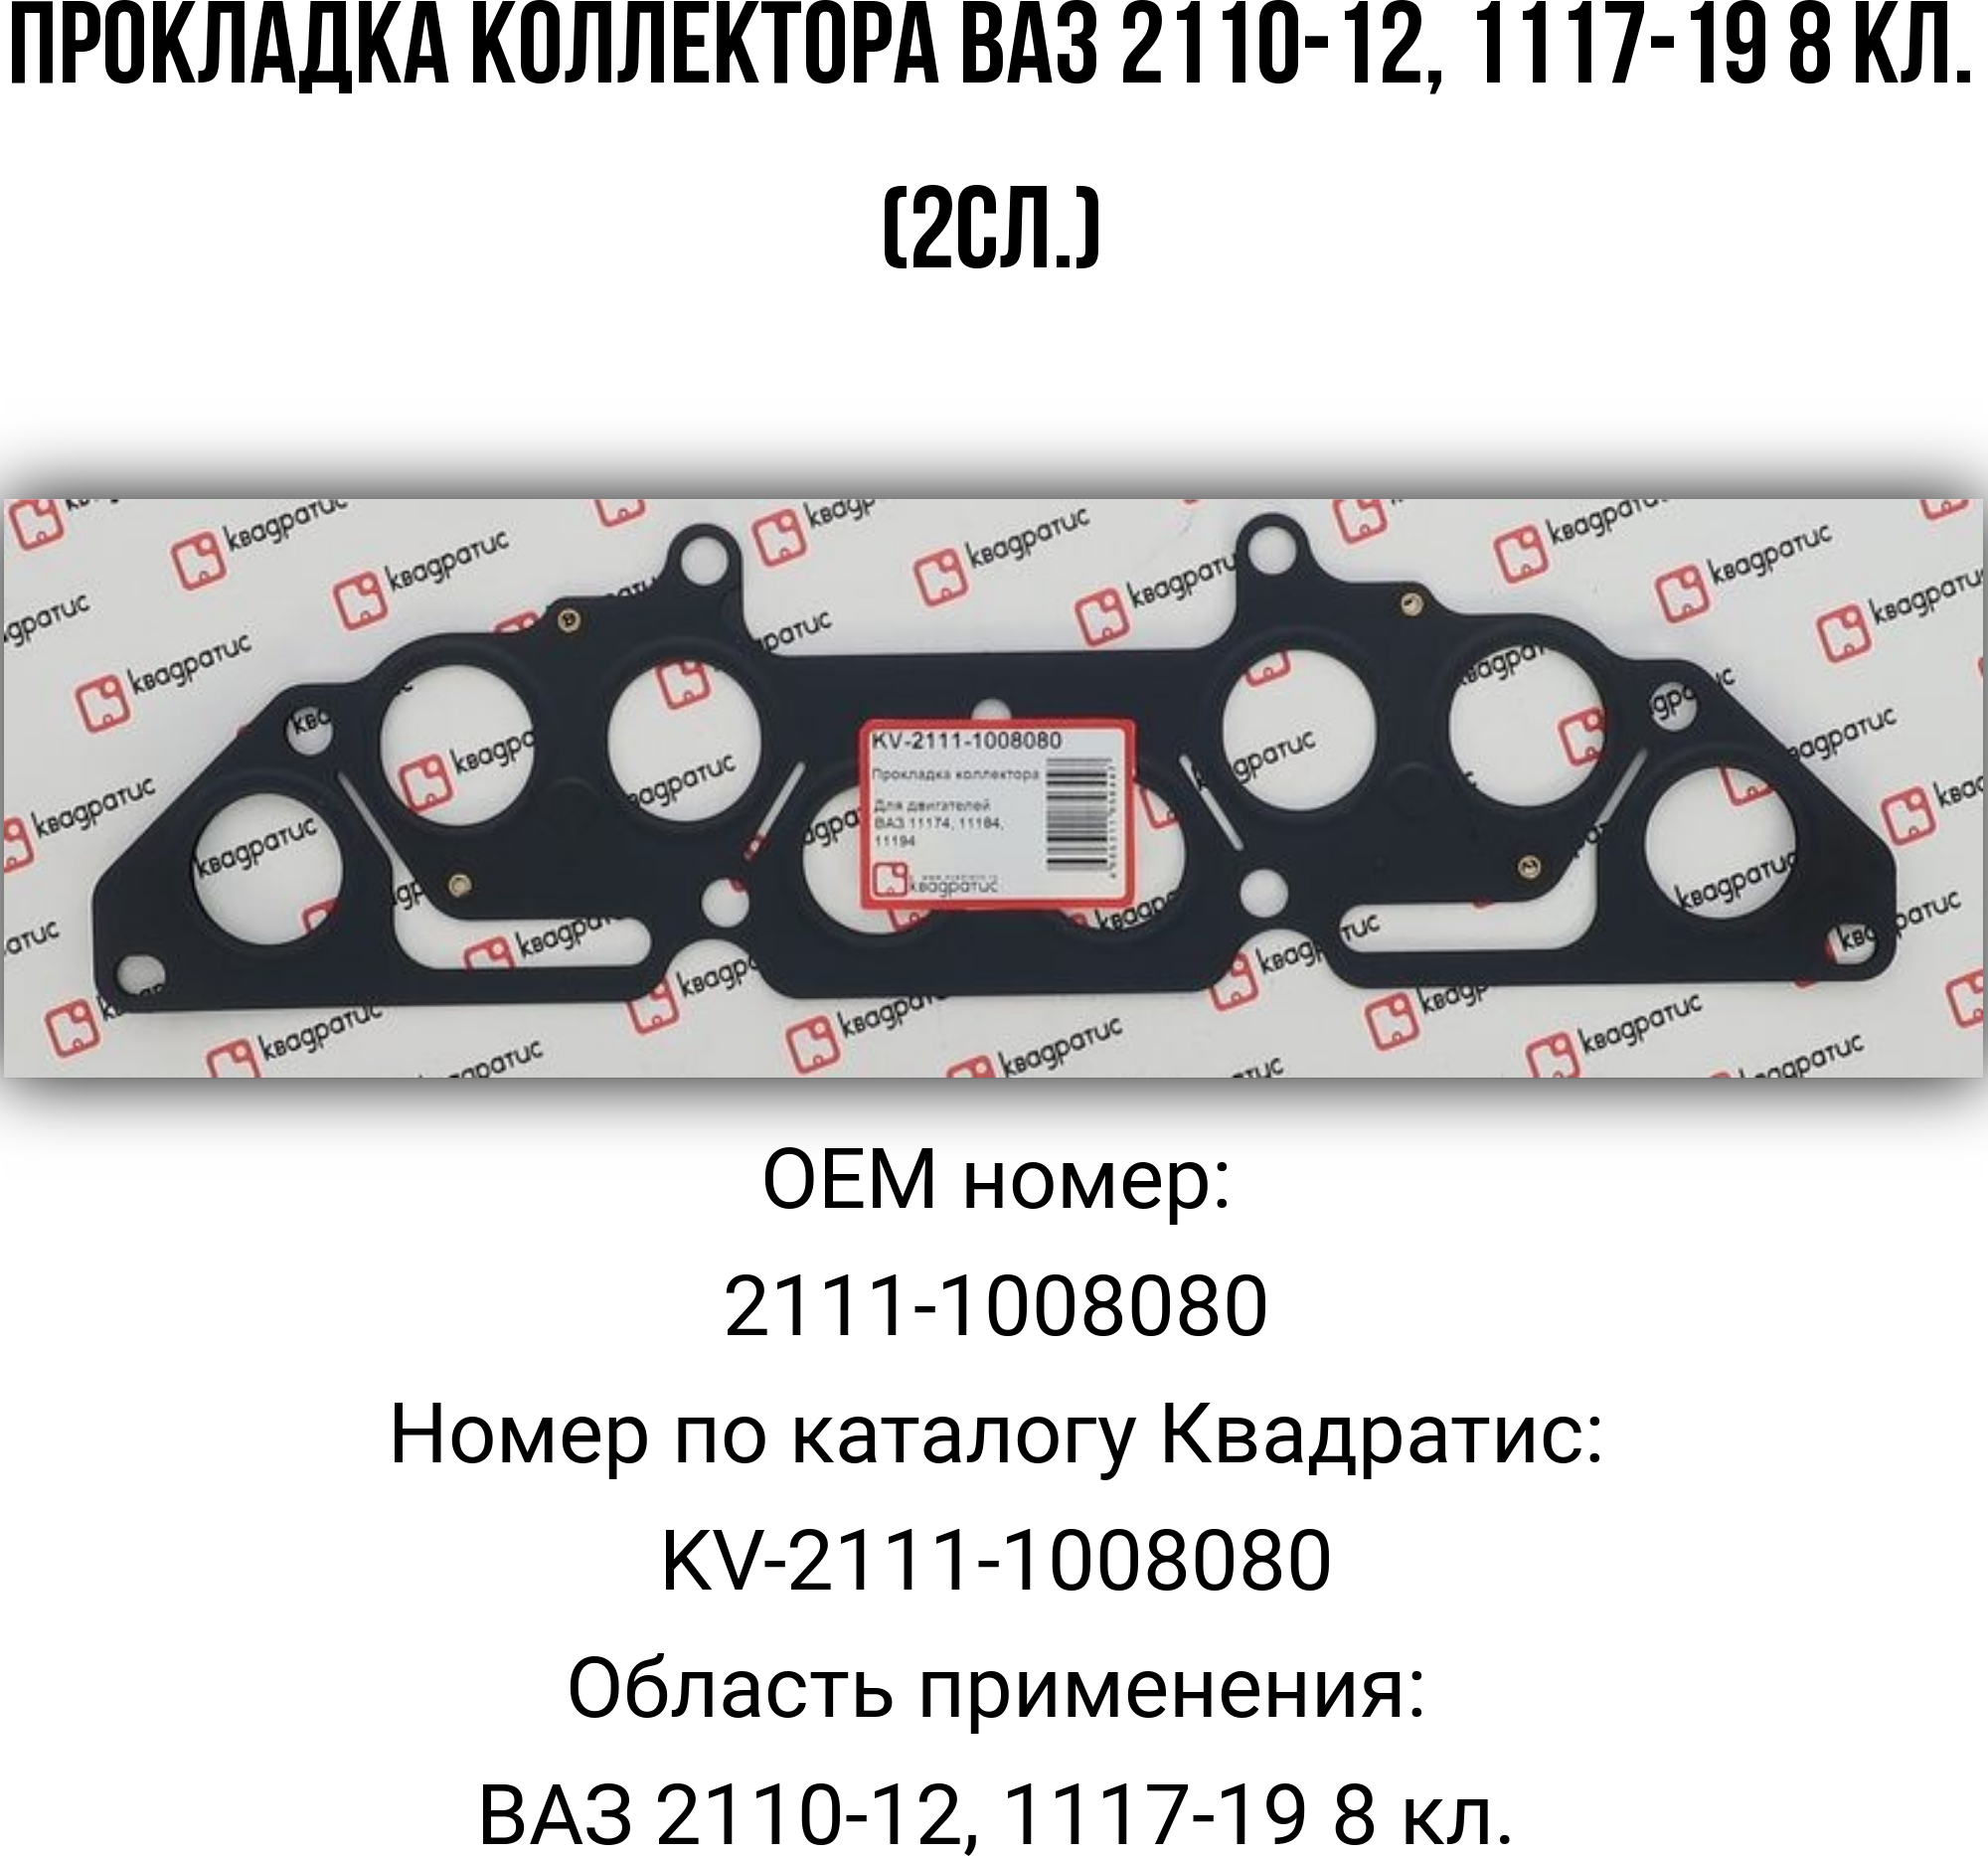 Прокладка коллектора ВАЗ 2110-12, 1117-19 8 кл.(2сл.)